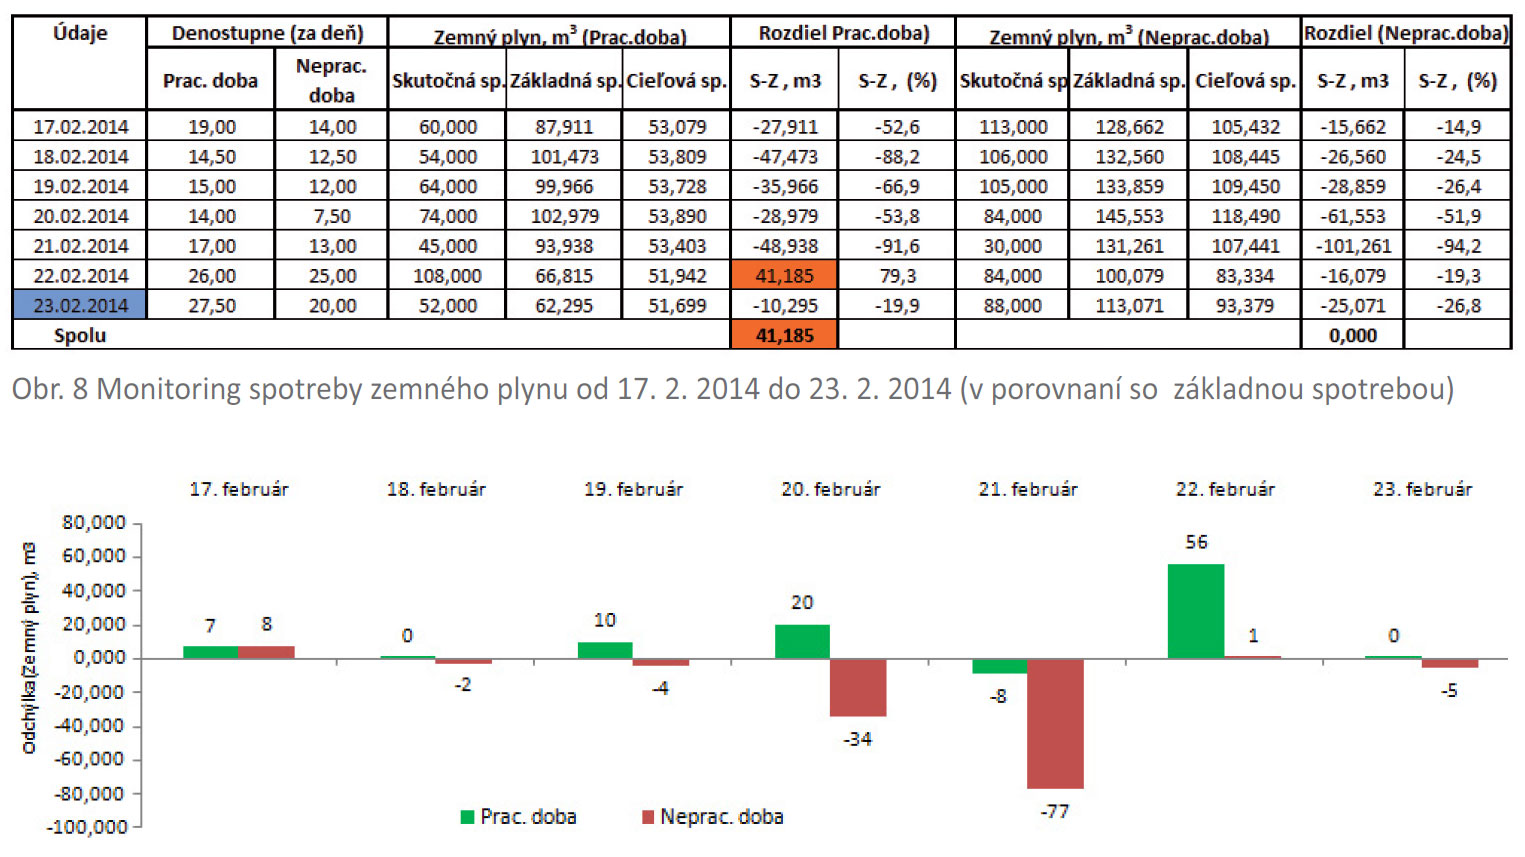 Obr. 8 Monitoring spotreby zemného plynu od 17. 2. 2014 do 23. 2. 2014 (v porovnaní so  základnou spotrebou) / Obr. 9 Monitoring spotreby zemného plynu od 17. 2. 2014 do 23. 2. 2014 (v porovnaní s cieľovou spotrebou)